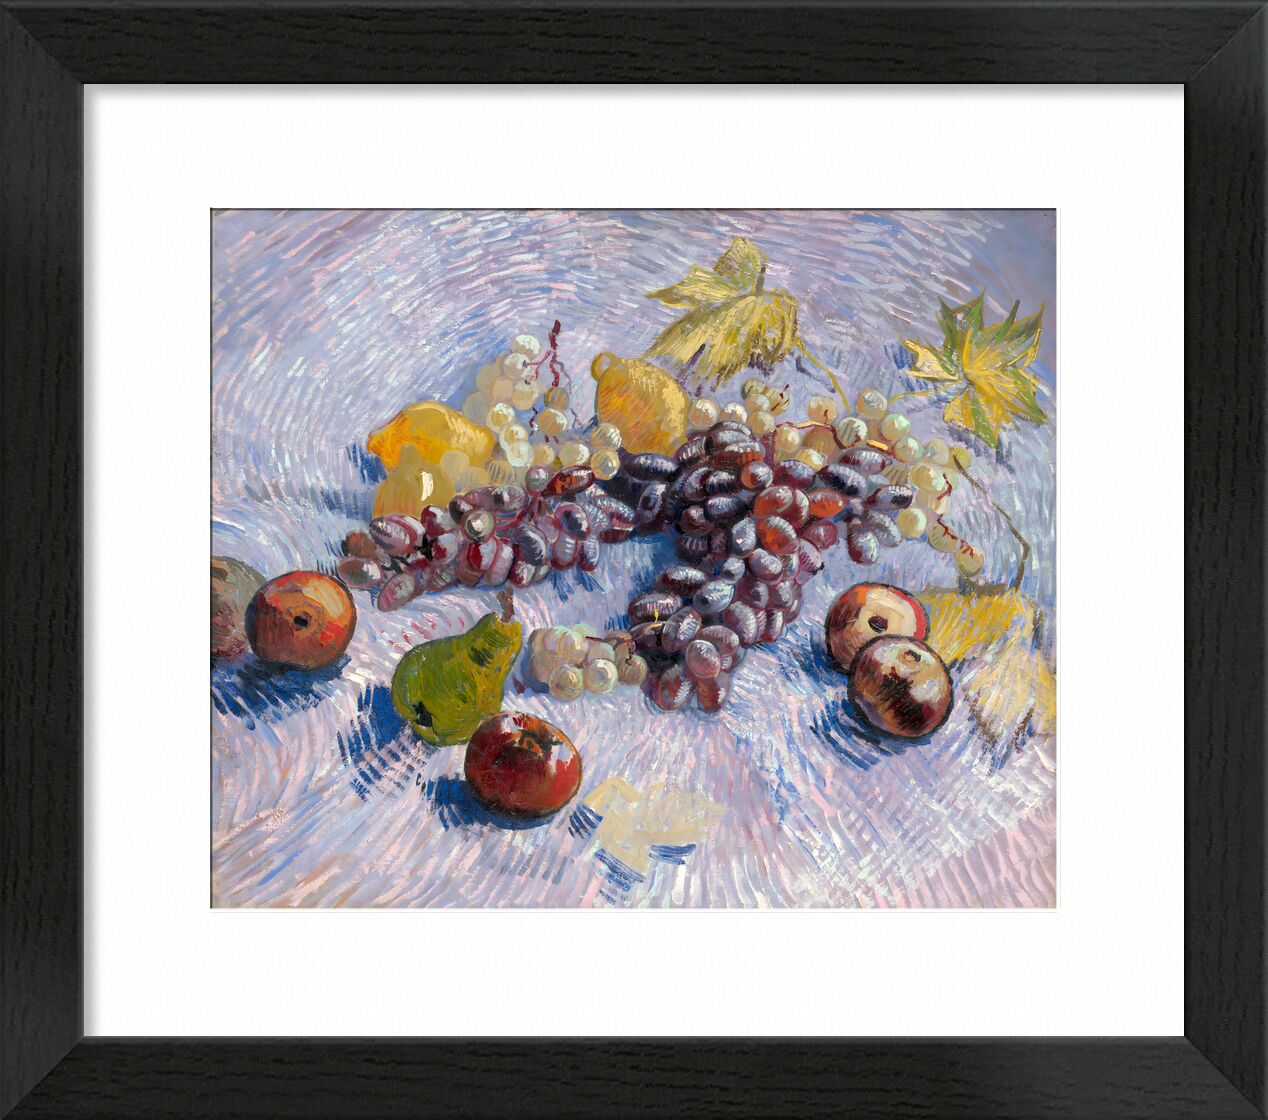 Weintrauben, Zitronen, Birnen und Äpfel - Van Gogh von Bildende Kunst, Prodi Art, Van gogh, VINCENT VAN GOGH, Stillleben, Malerei, Rosine, Äpfel, Birnen, Zitronen